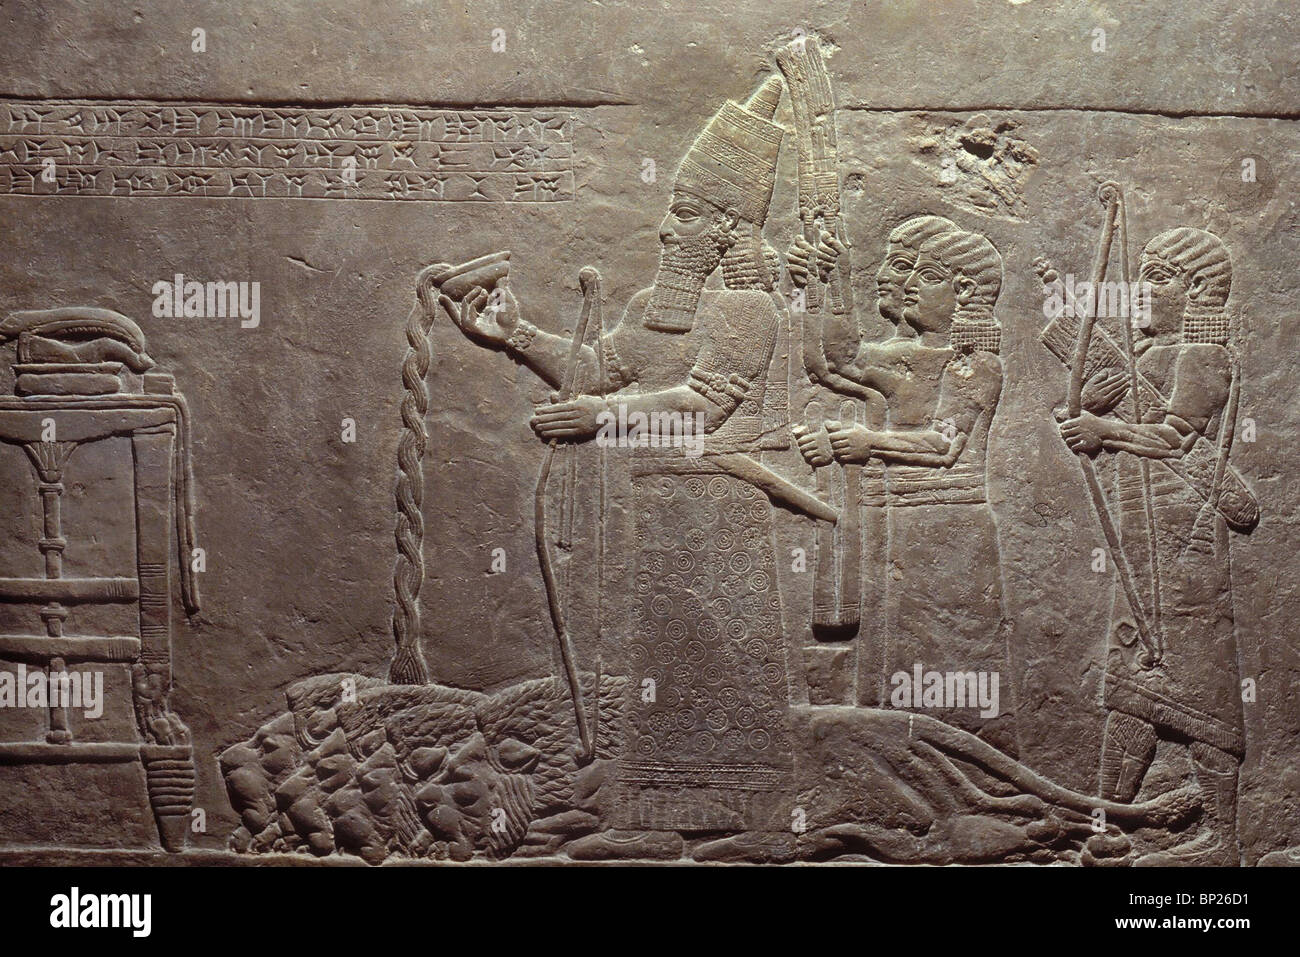 ASHURBANIPAL, rey de Asiria, 668 - 627 A.C. verter una libación sobre muertos leones, delante de una mesa de ofrendas de incienso Y STAND Foto de stock